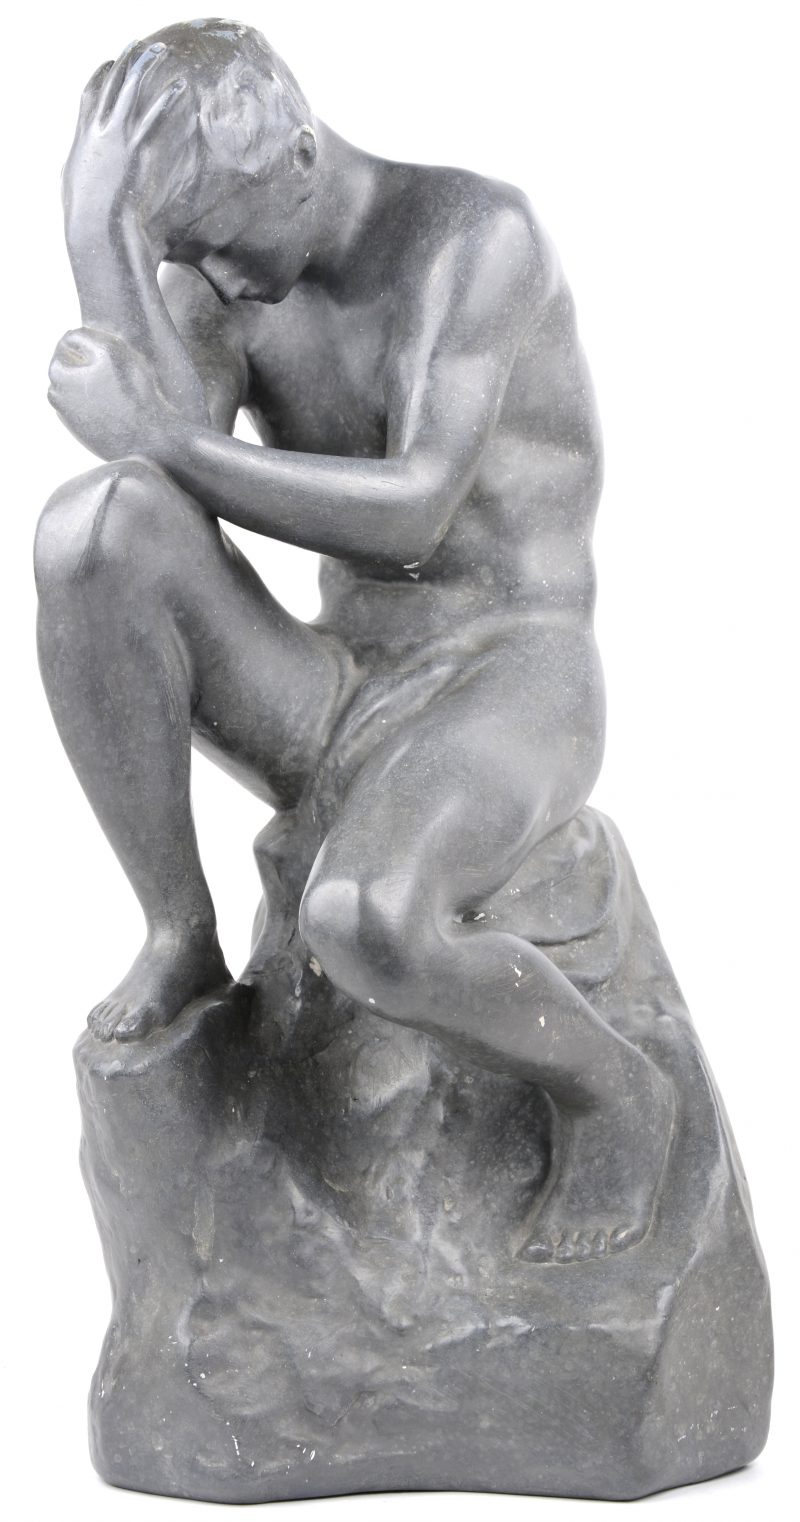 “De denker”. Een beeld van grijsgepatineerd plaaster naar een werk van Rodin.